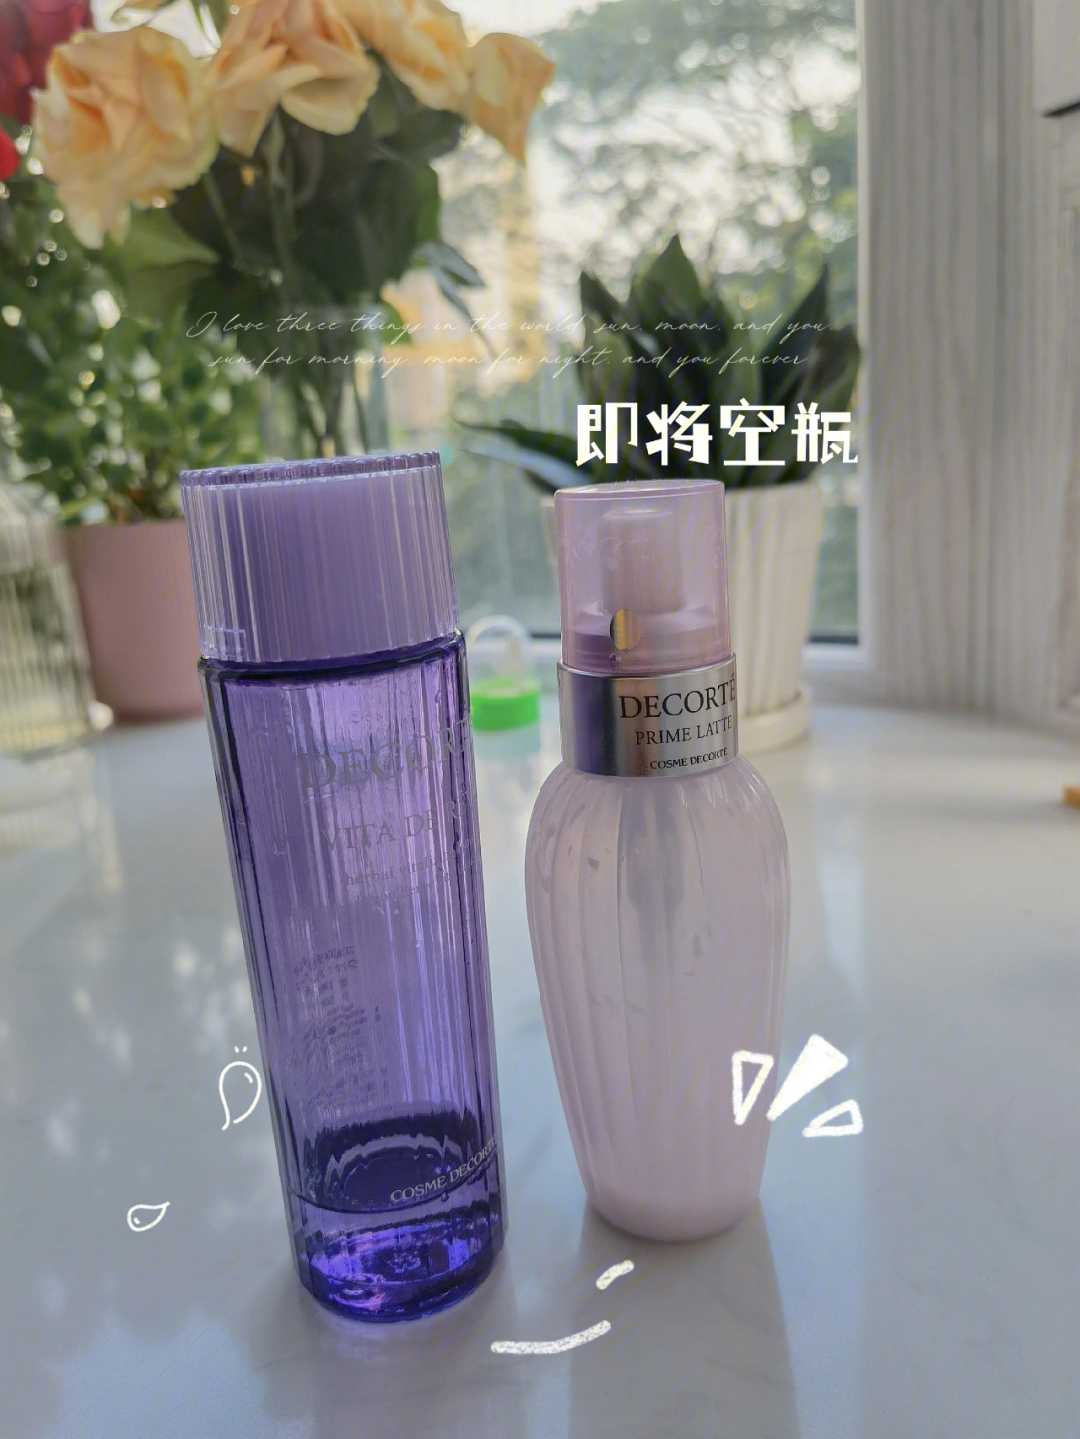 黛珂紫苏水用法图片